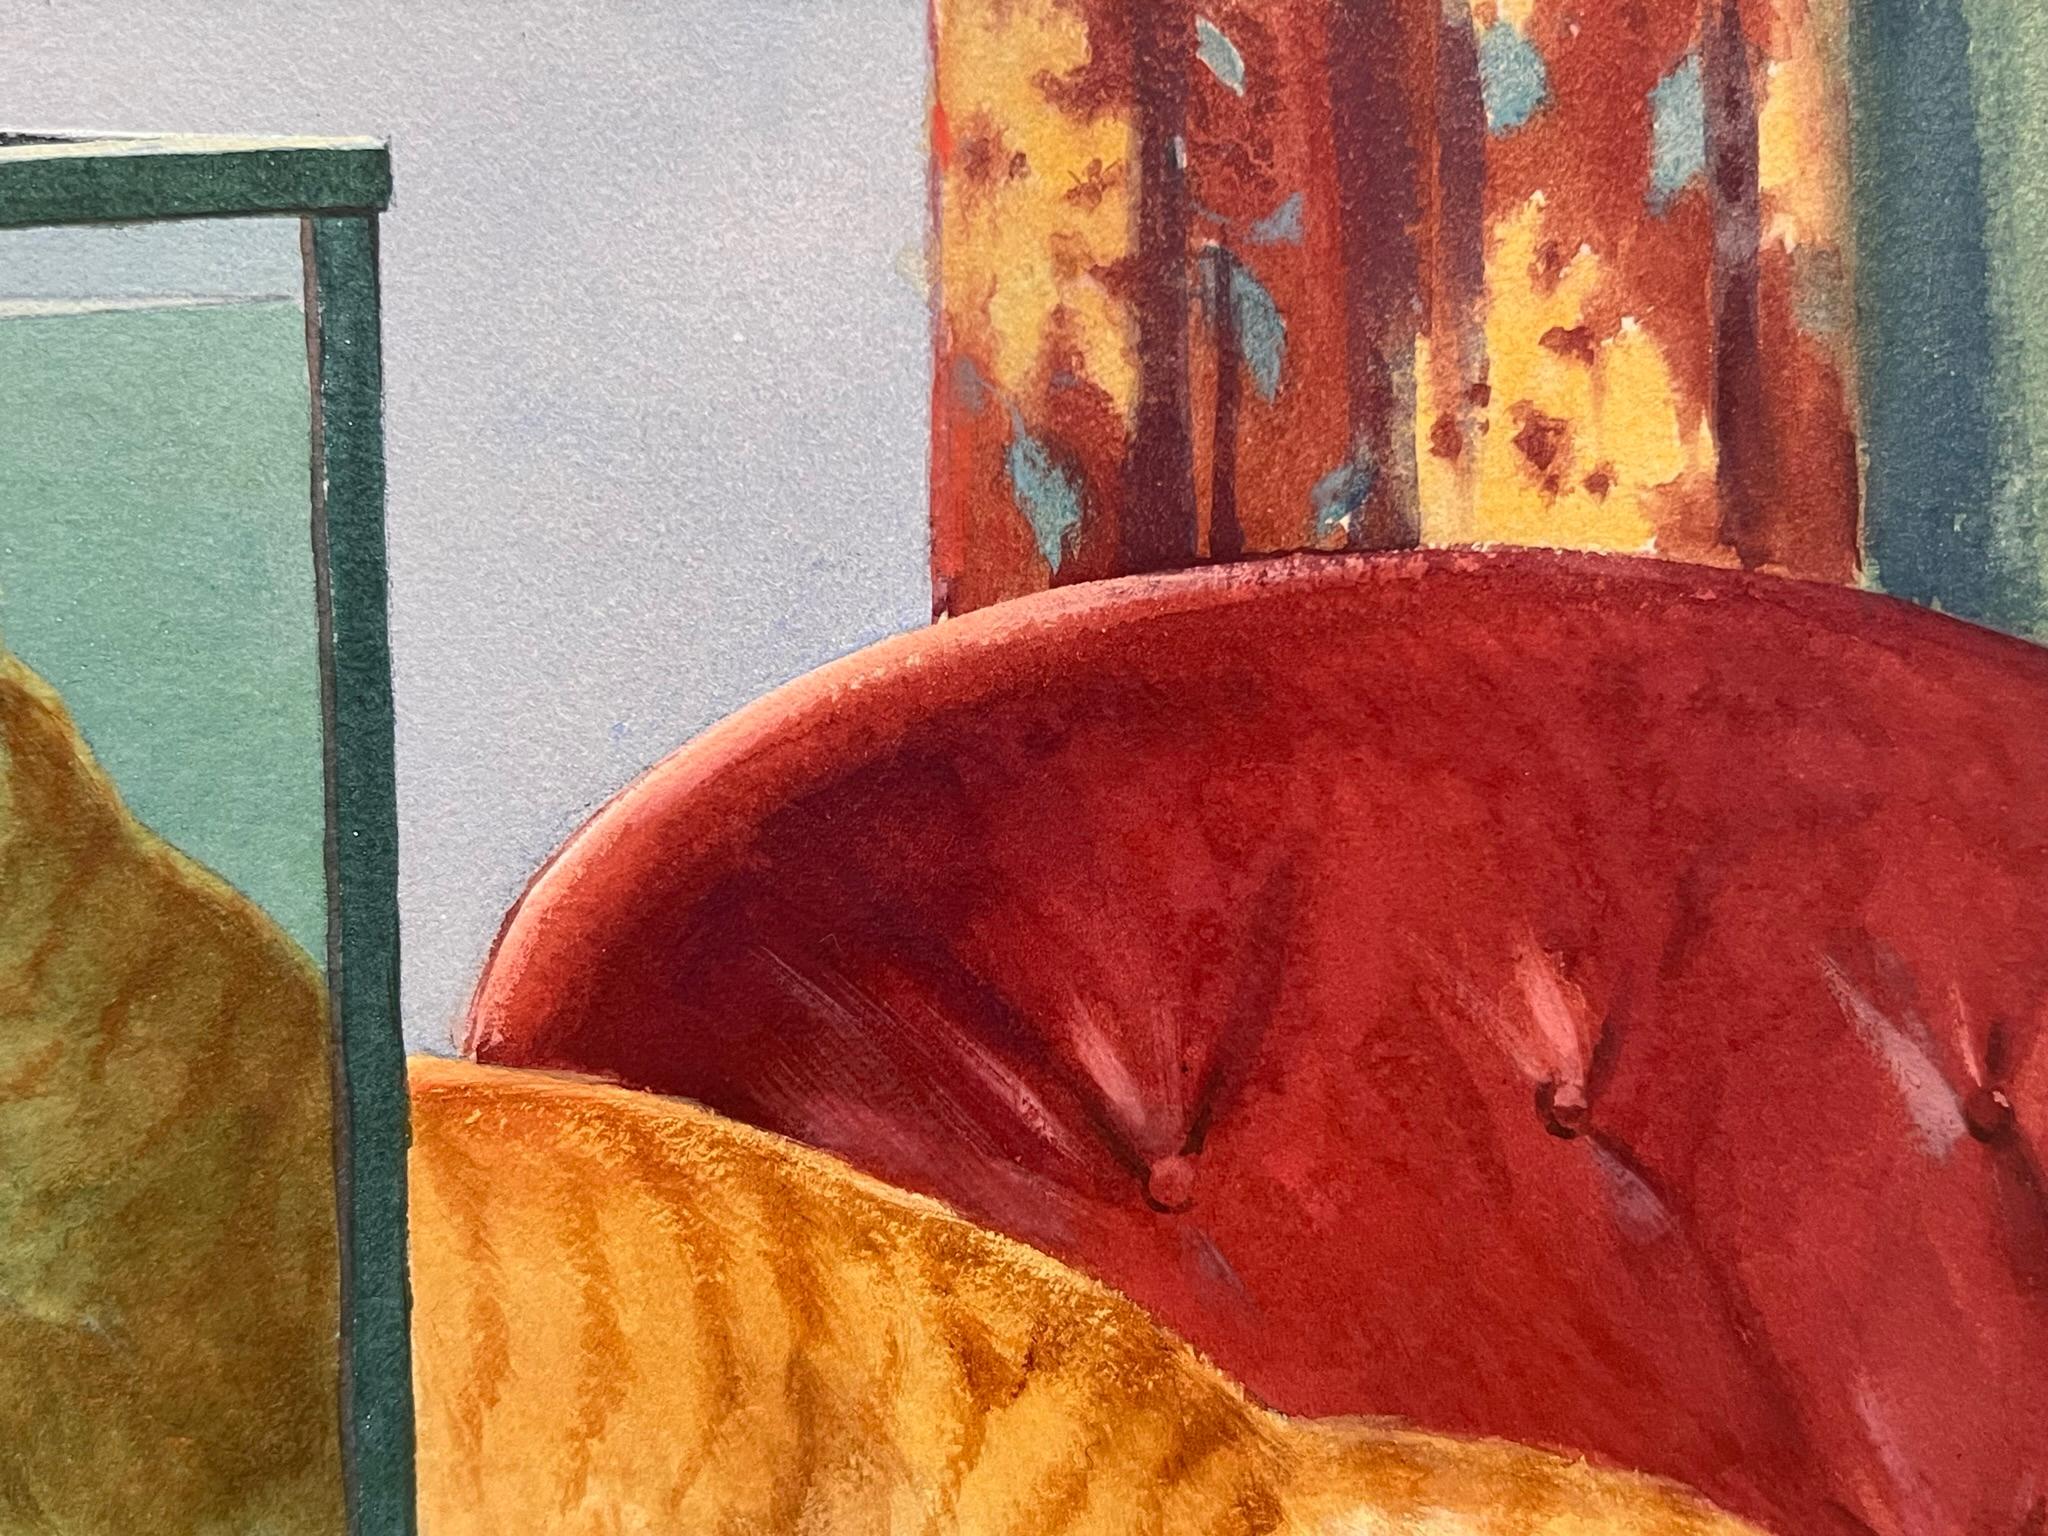 Nous avons une superbe peinture d'intérieur à vendre qui représente un chat orange effronté se frottant à la vitre d'un aquarium. Cette image témoigne de l'habileté de l'artiste à représenter les animaux avec beaucoup de couleurs et de profondeur.